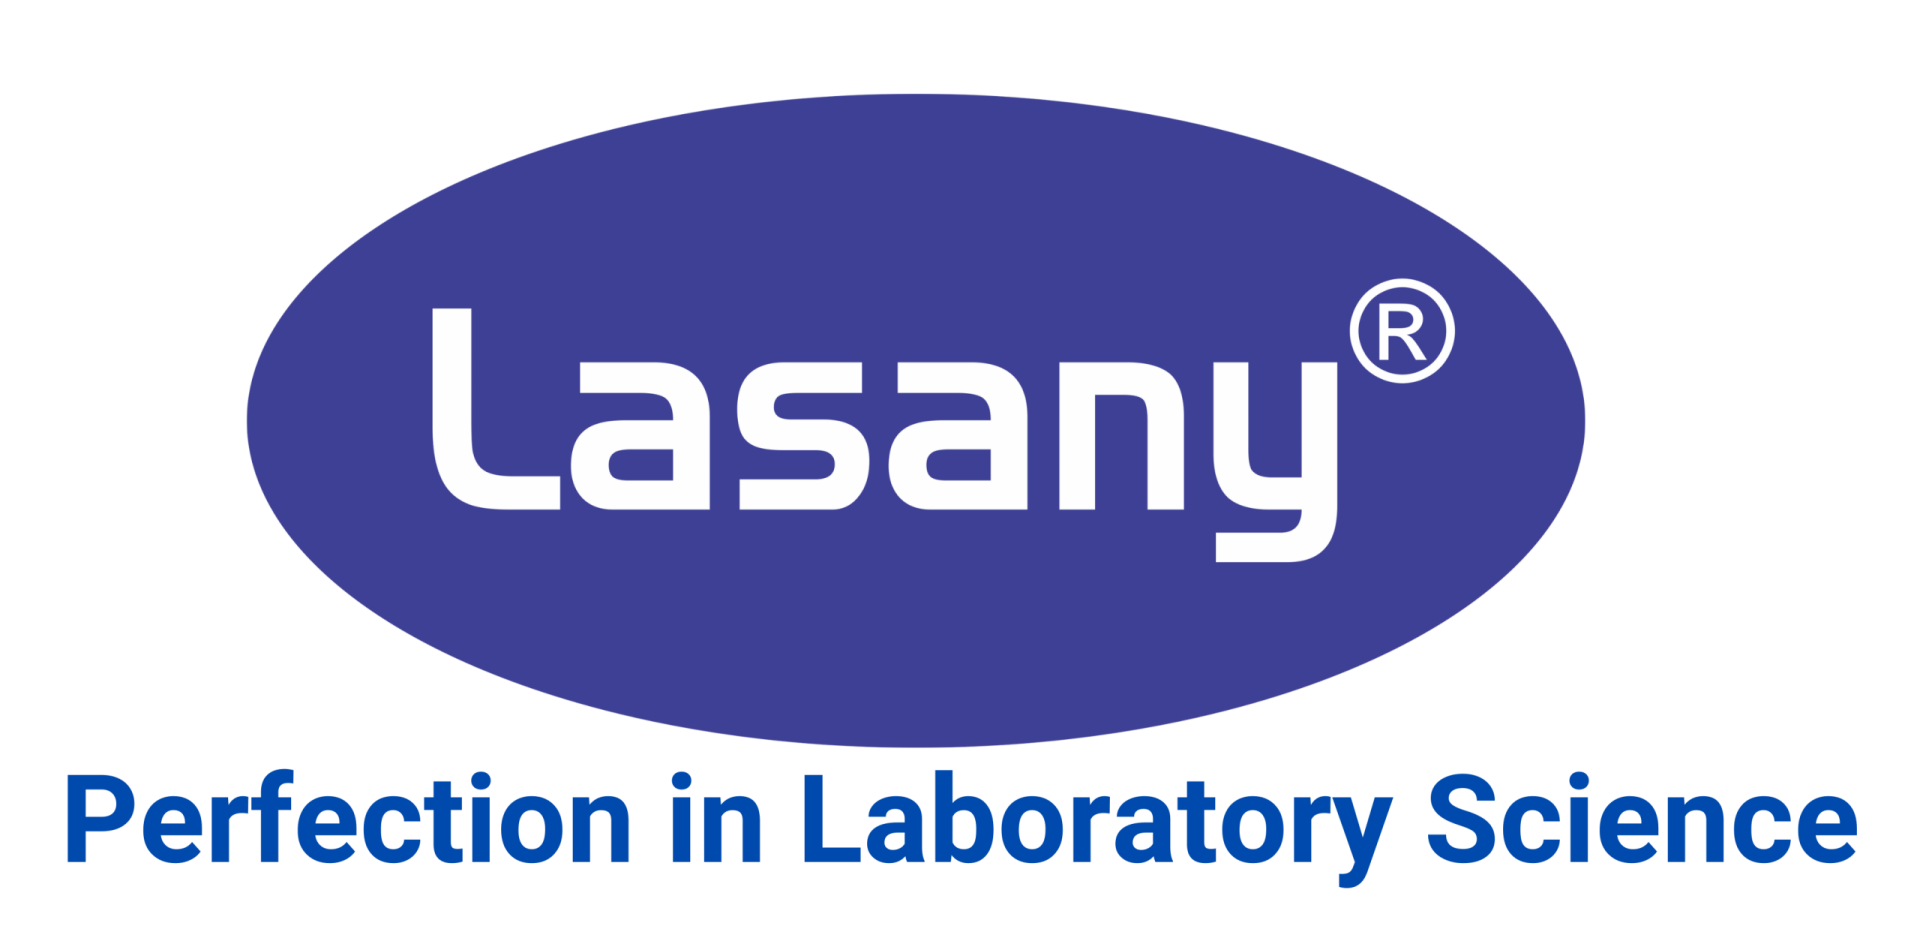 lasany tagline- Perefection in laboratory Science